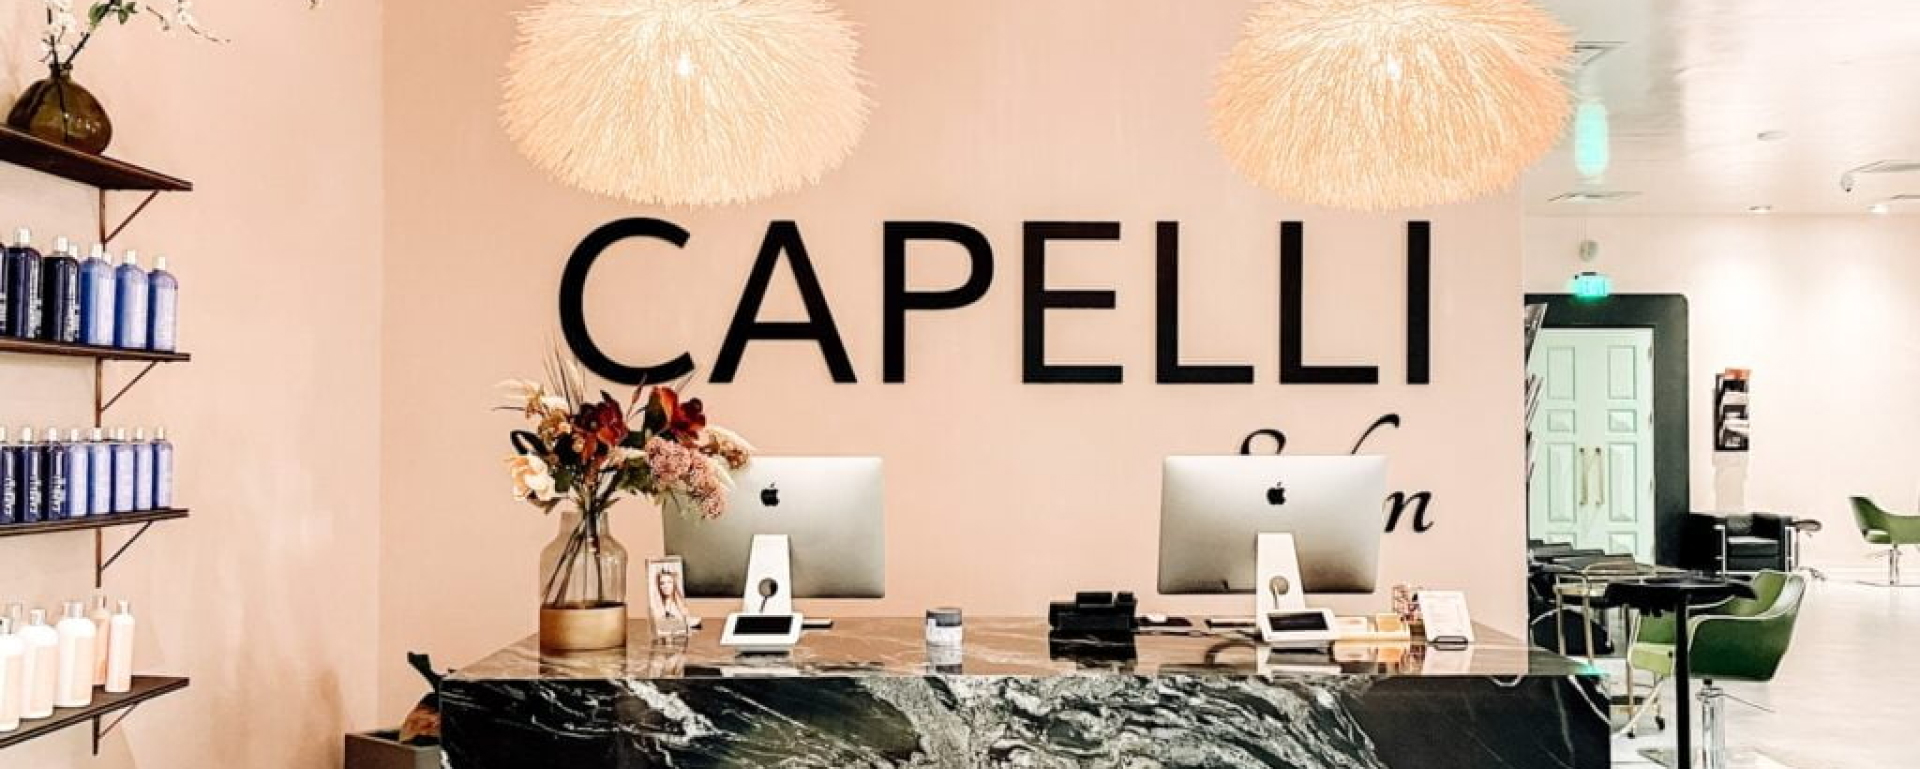 Capelli 01 